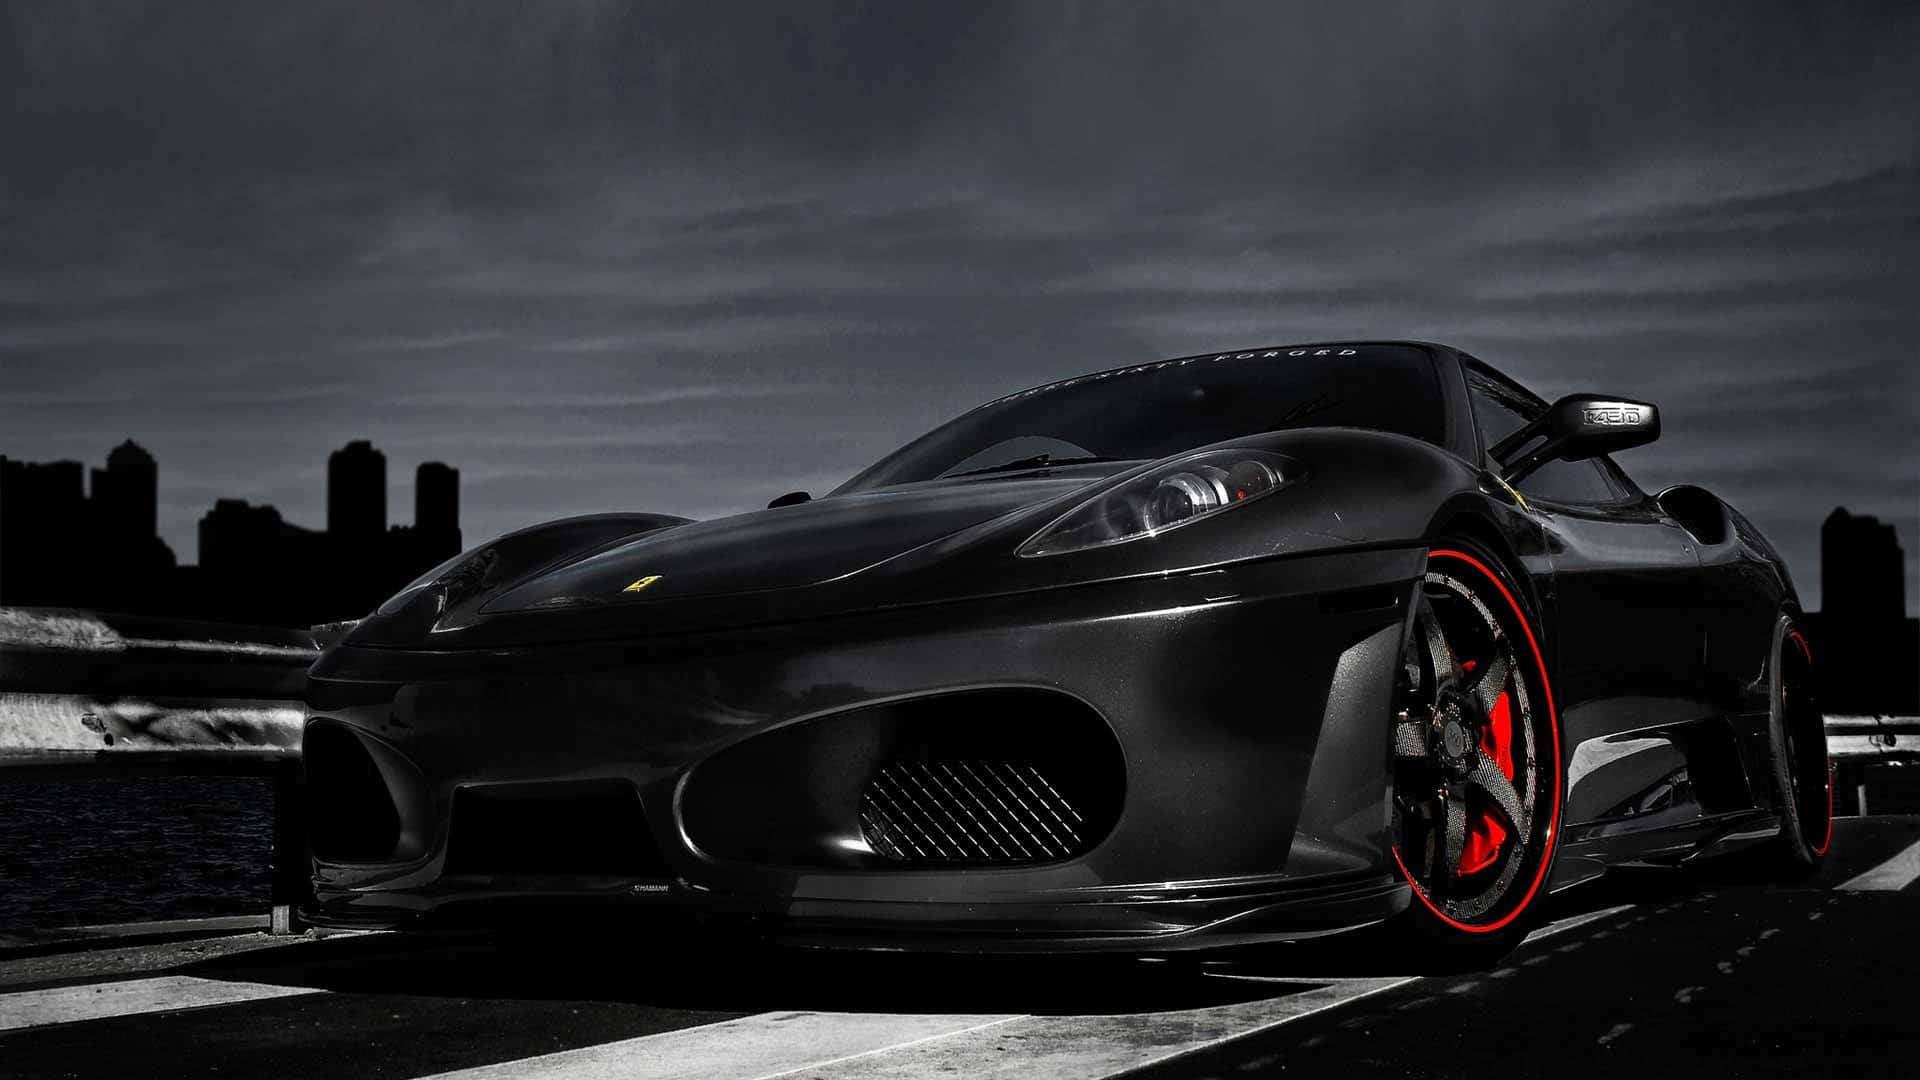 Bildöka Dina Adrenalinnivåer Med En Cool Ferrari-bil. Wallpaper